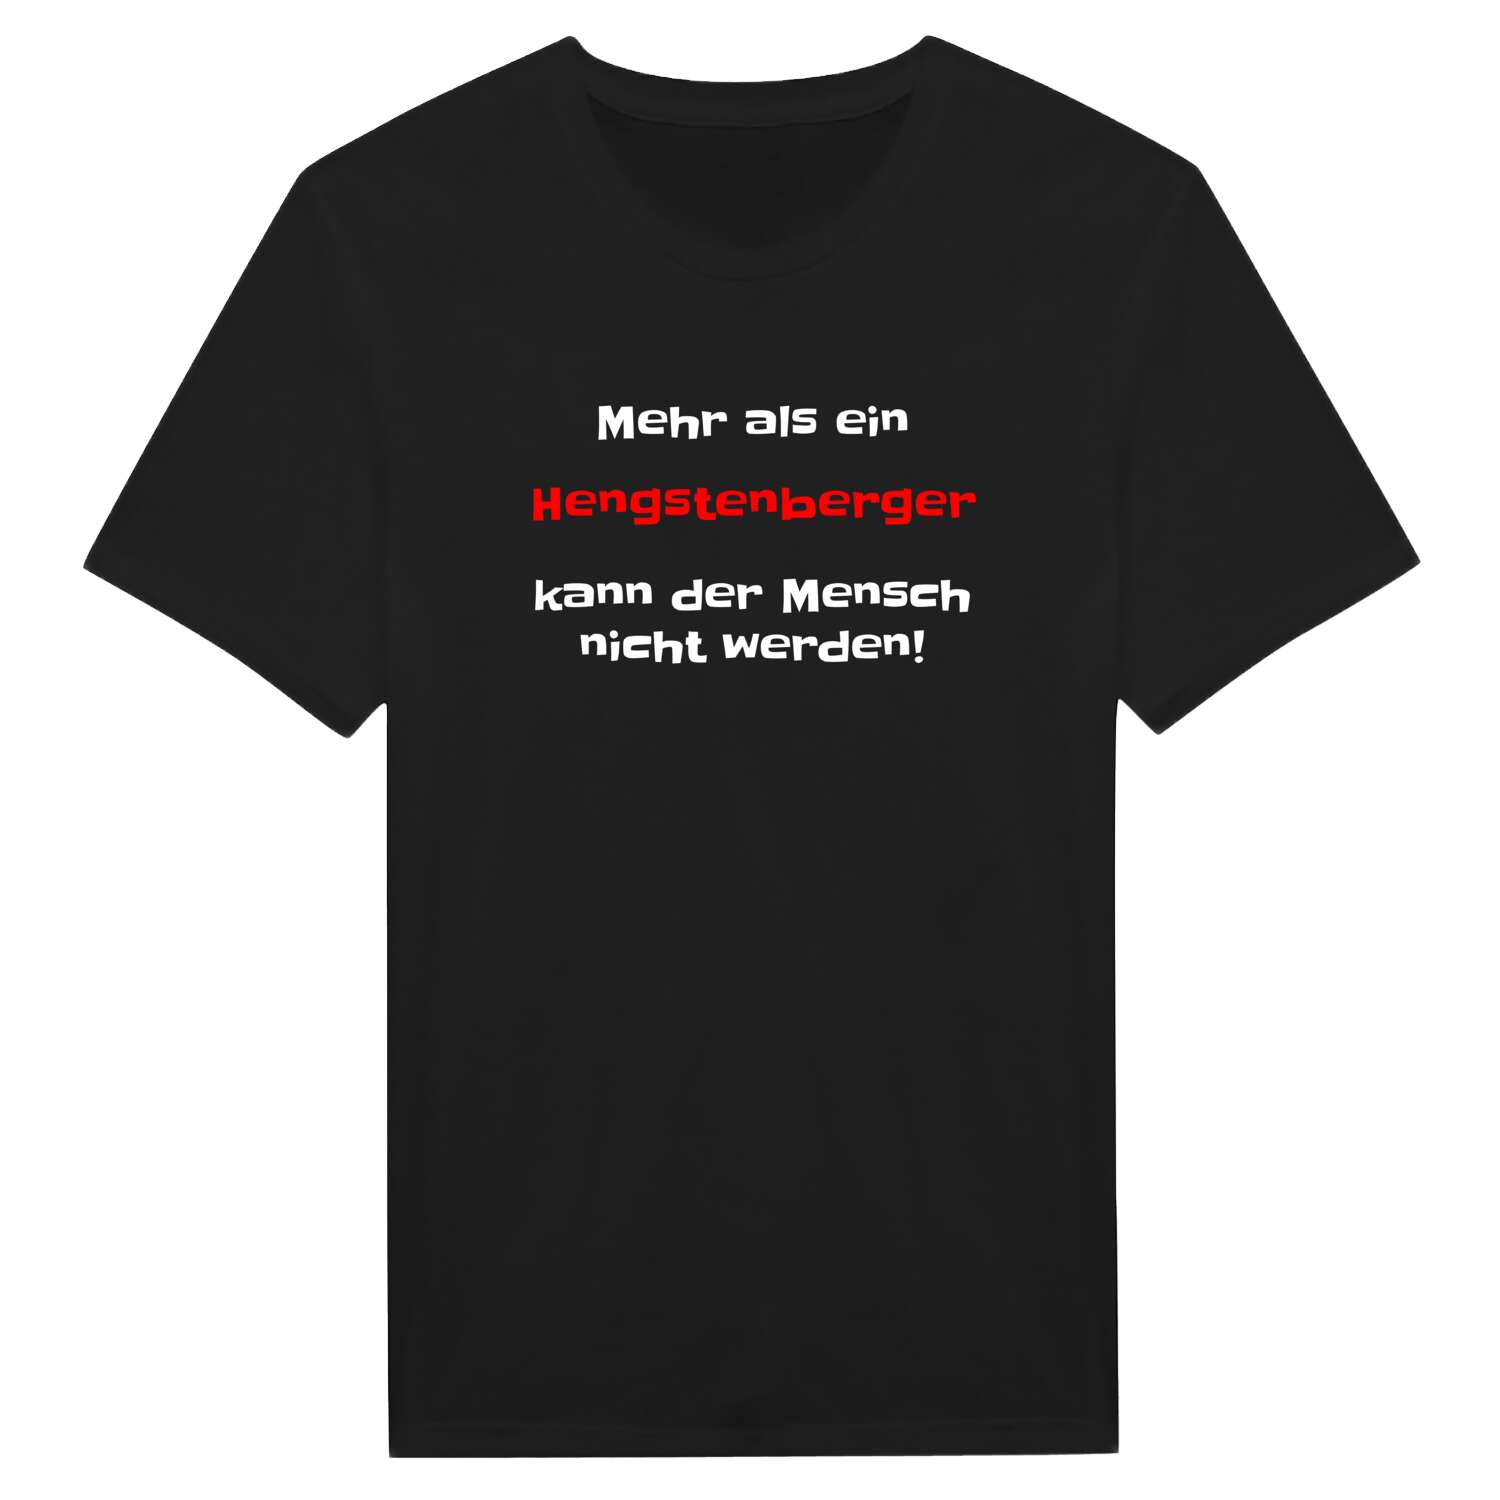 Hengstenberg T-Shirt »Mehr als ein«